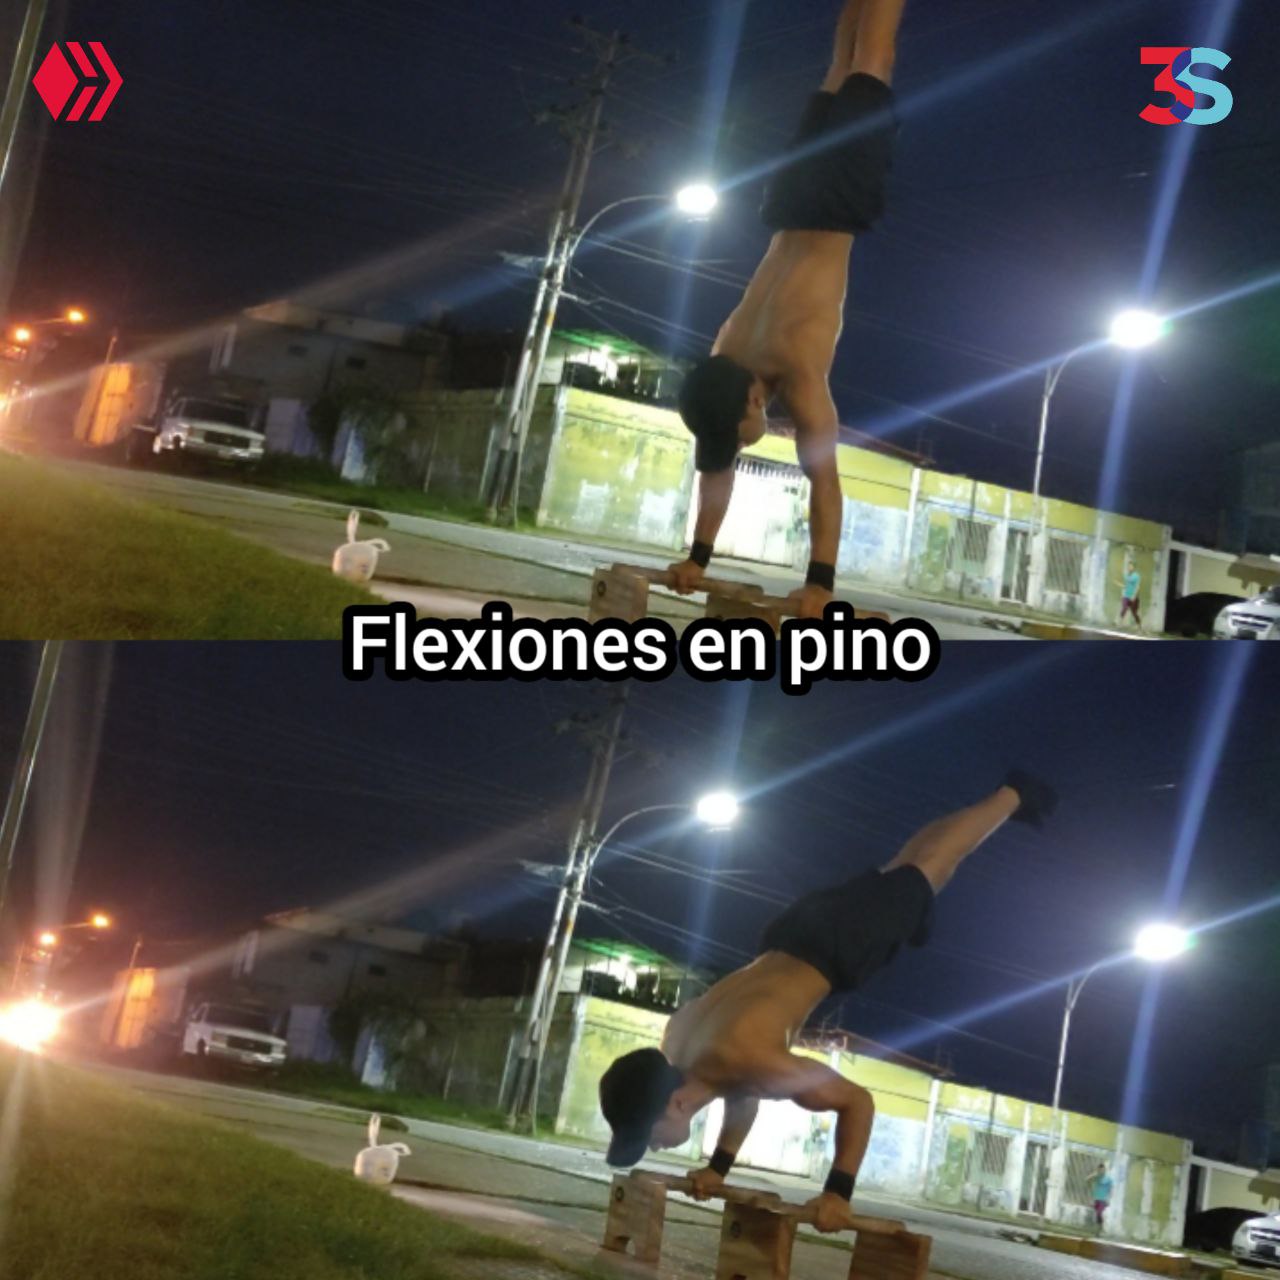 Flexiones a pino.jpg